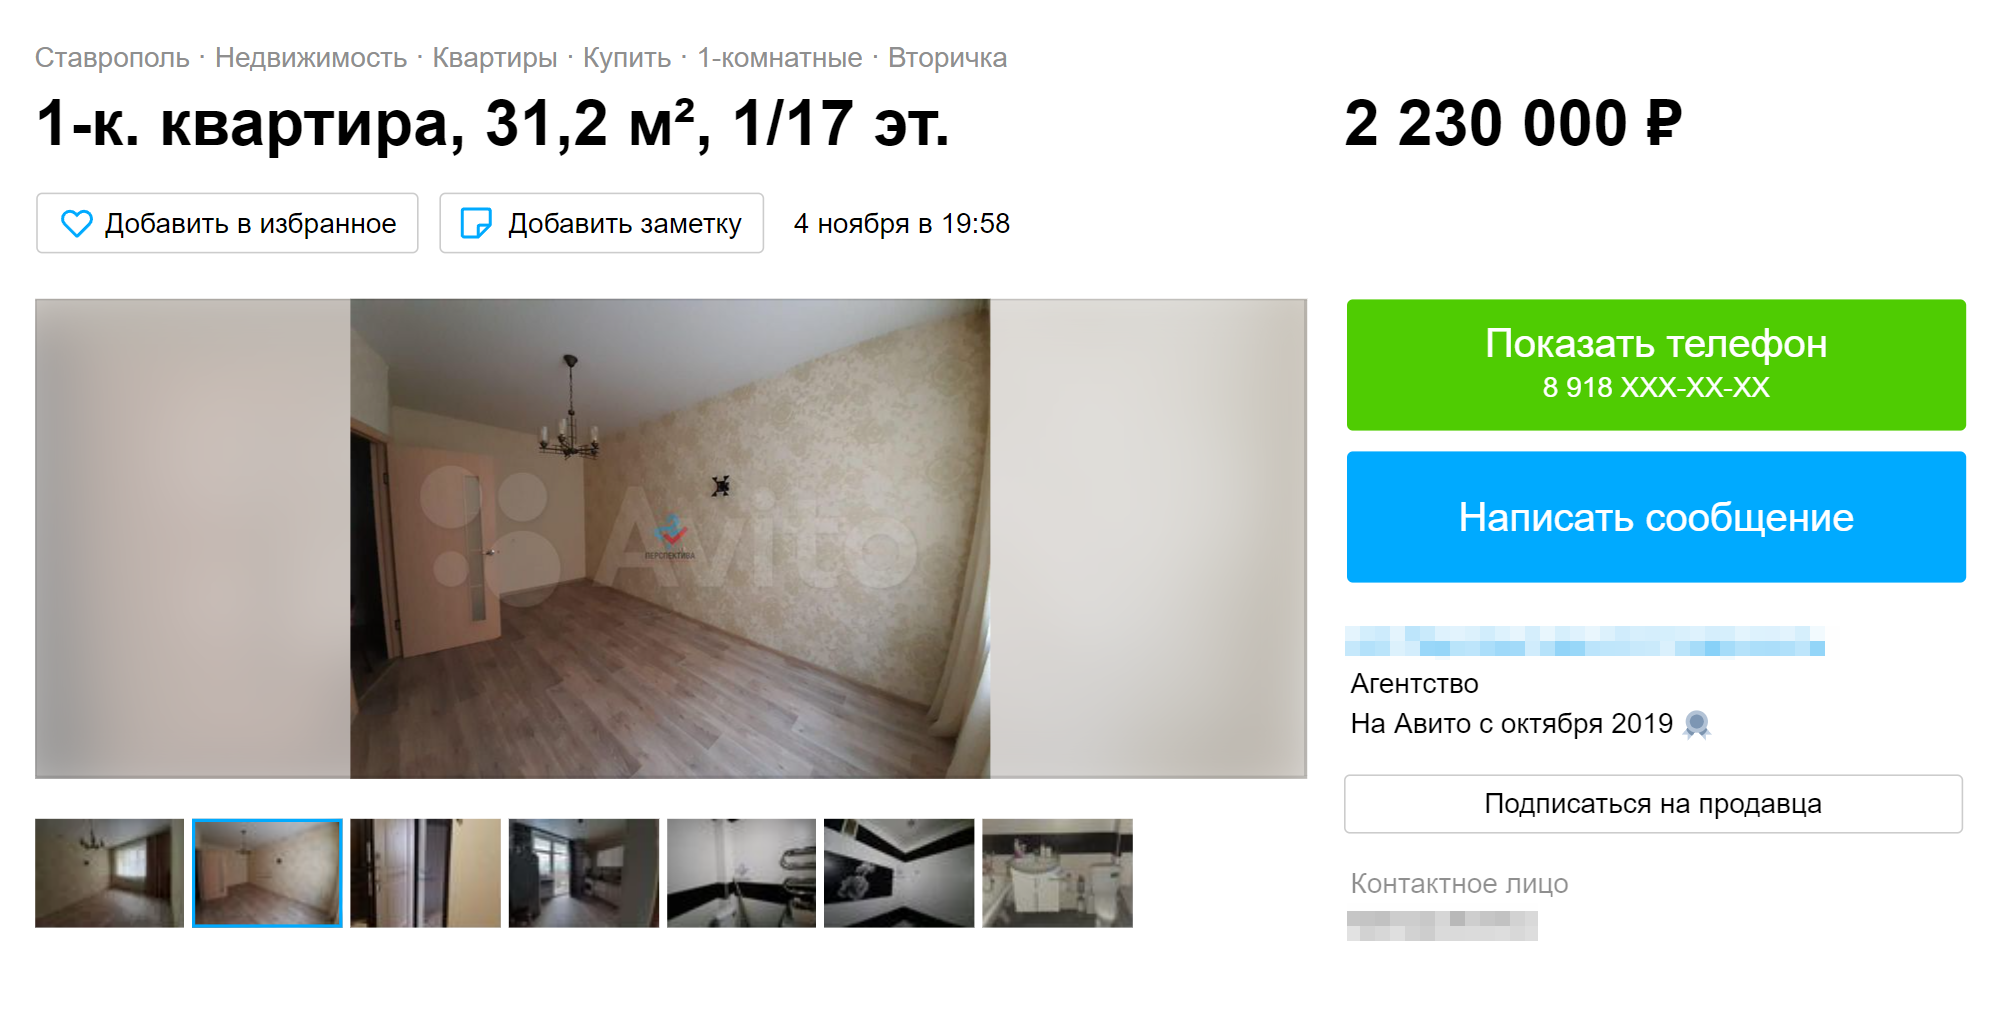 Однокомнатная квартира в Перспективном стоит от 2,3 млн рублей